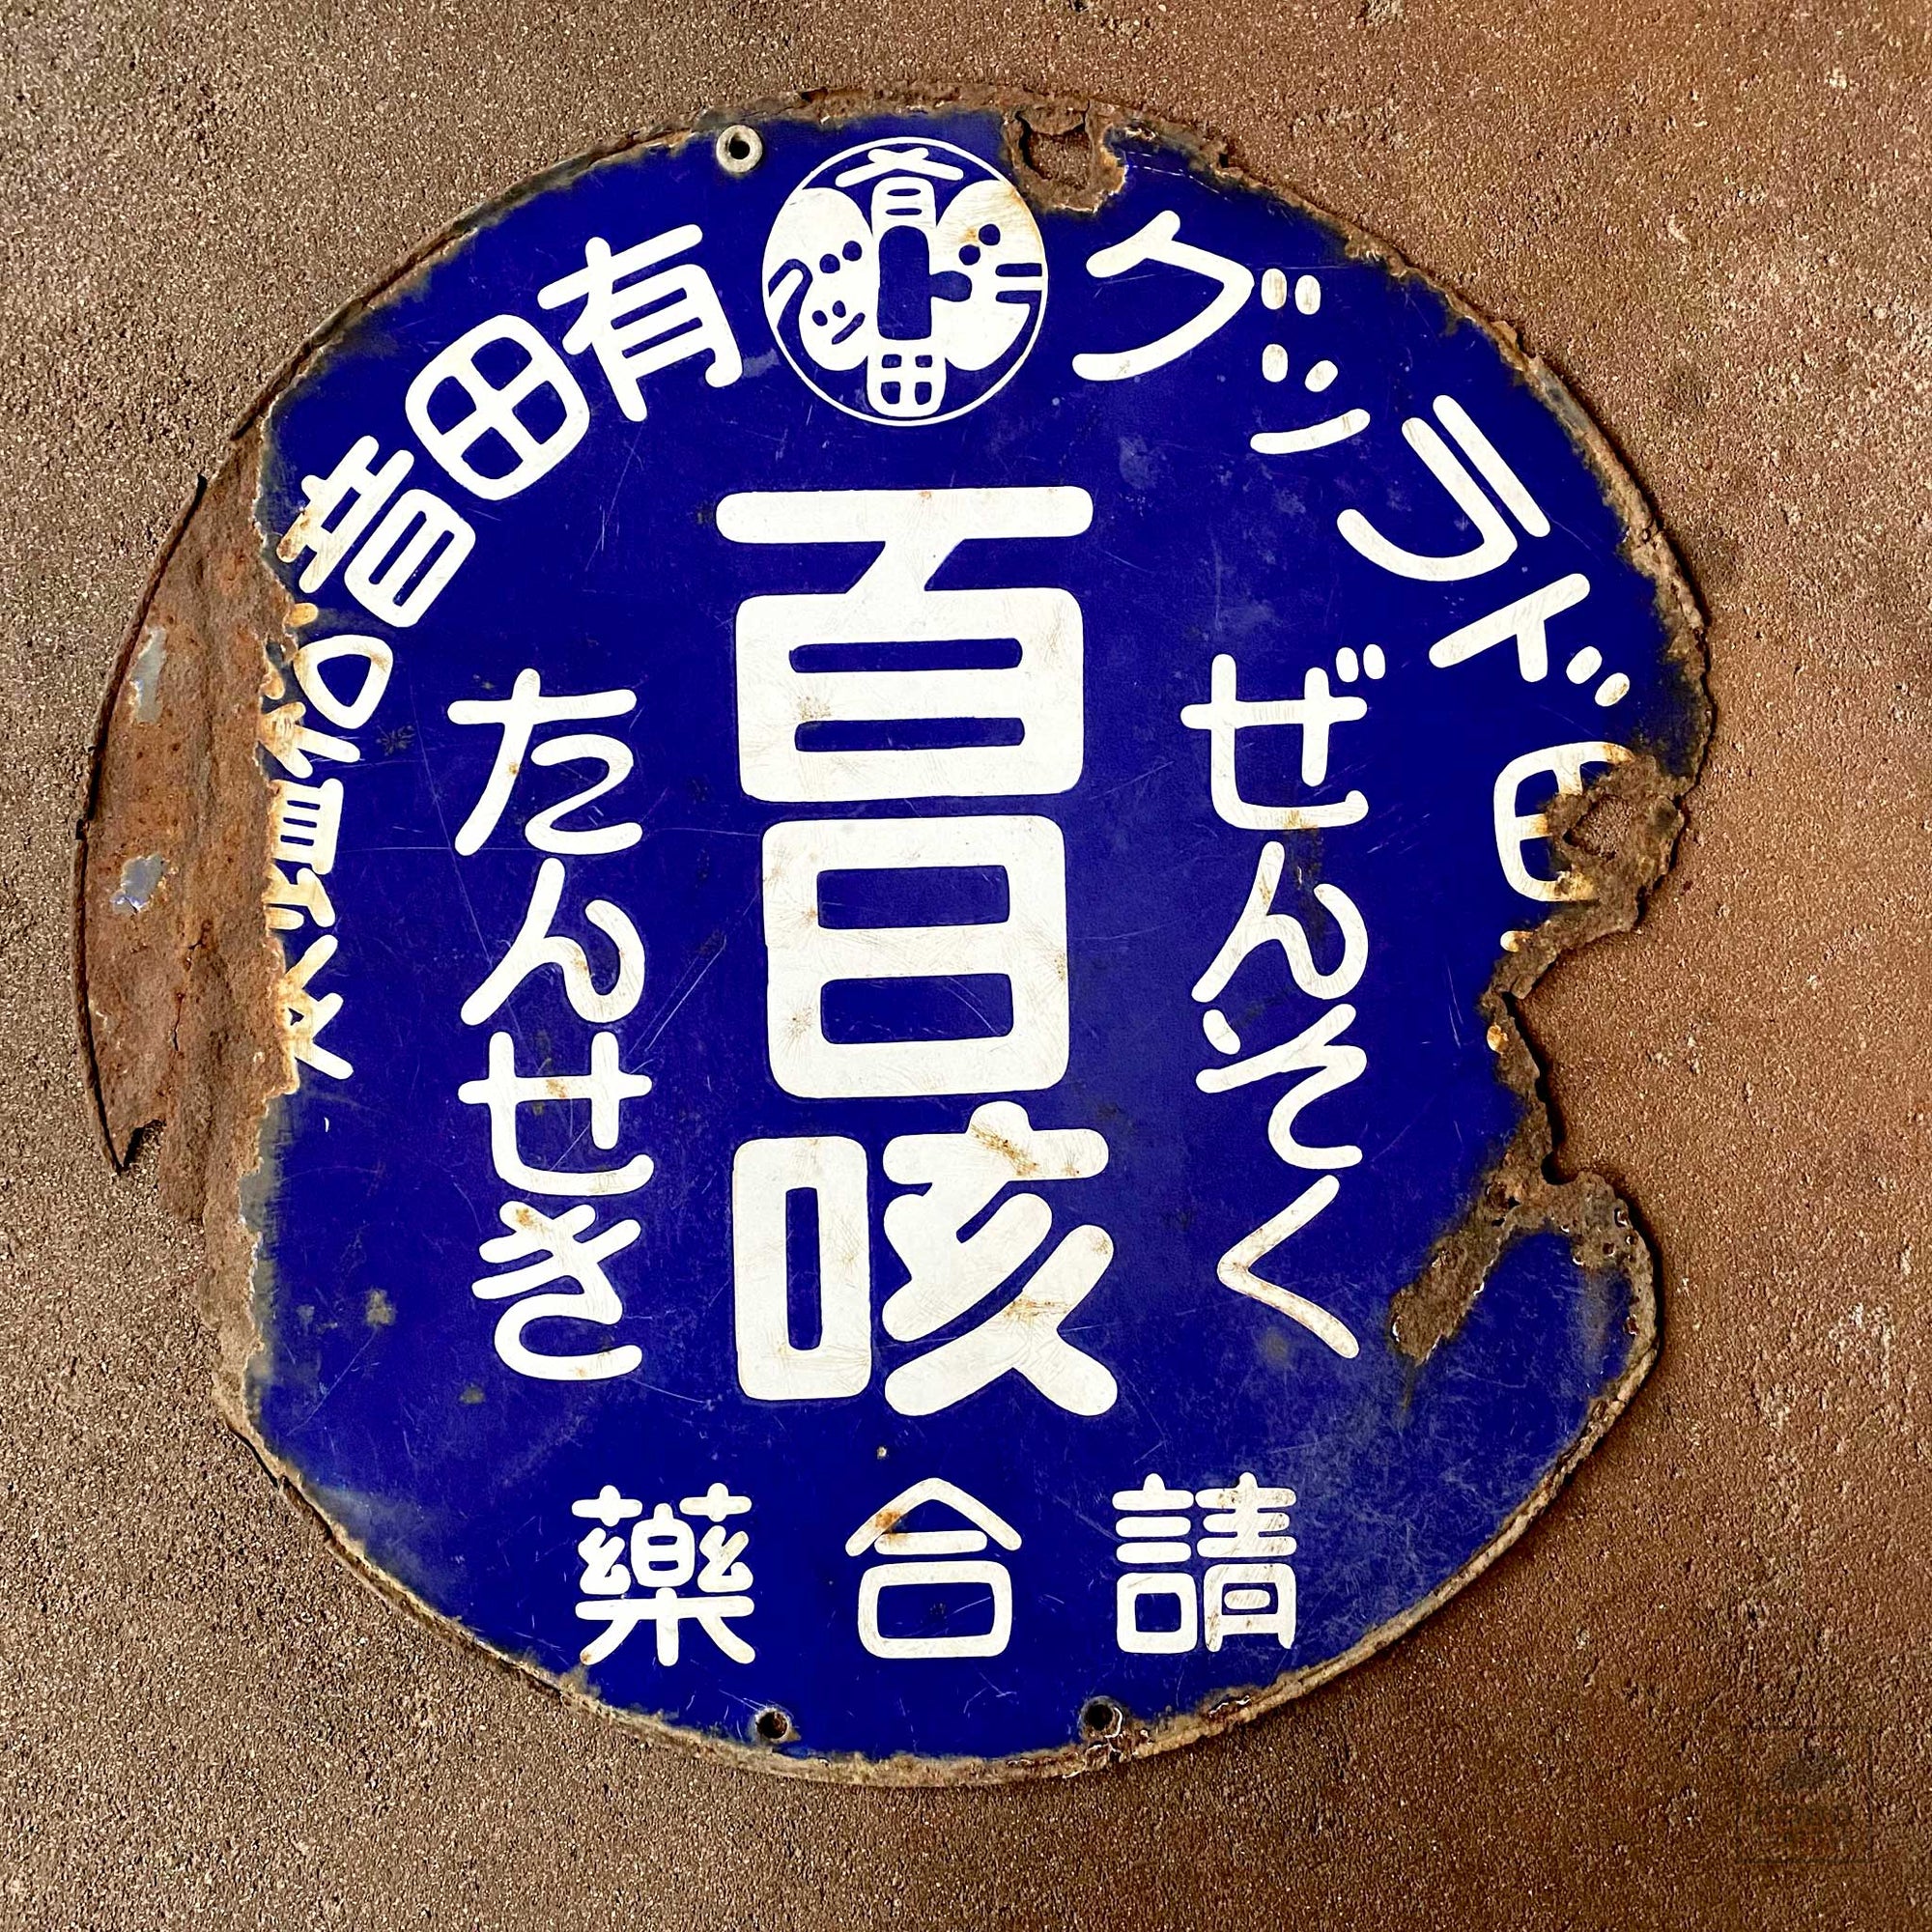 Old Japanese Shop Sign - Drug Store